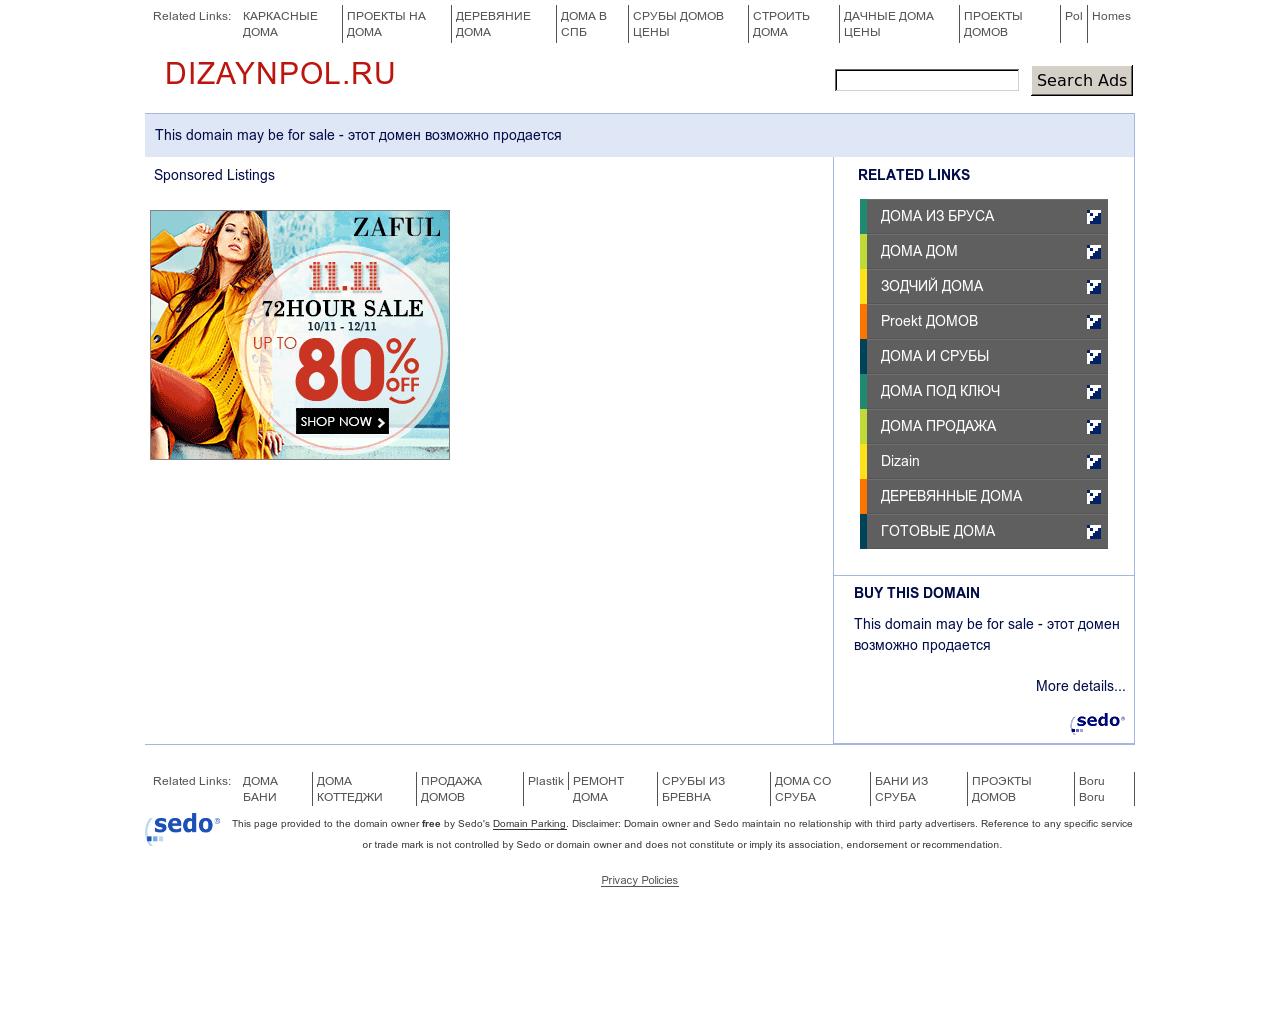 Изображение сайта dizaynpol.ru в разрешении 1280x1024